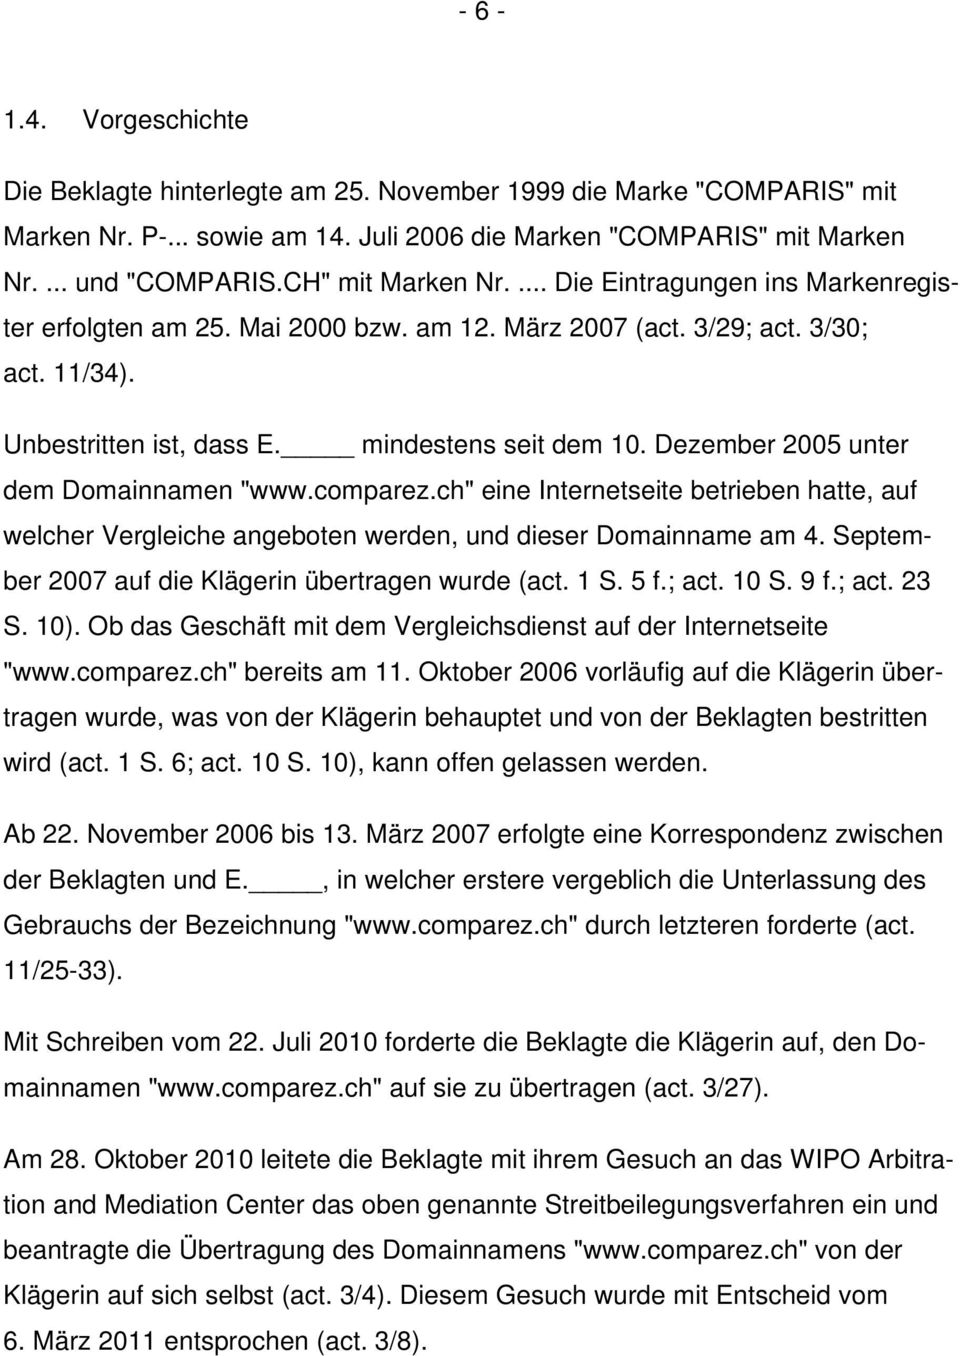 Dezember 2005 unter dem Domainnamen "www.comparez.ch" eine Internetseite betrieben hatte, auf welcher Vergleiche angeboten werden, und dieser Domainname am 4.